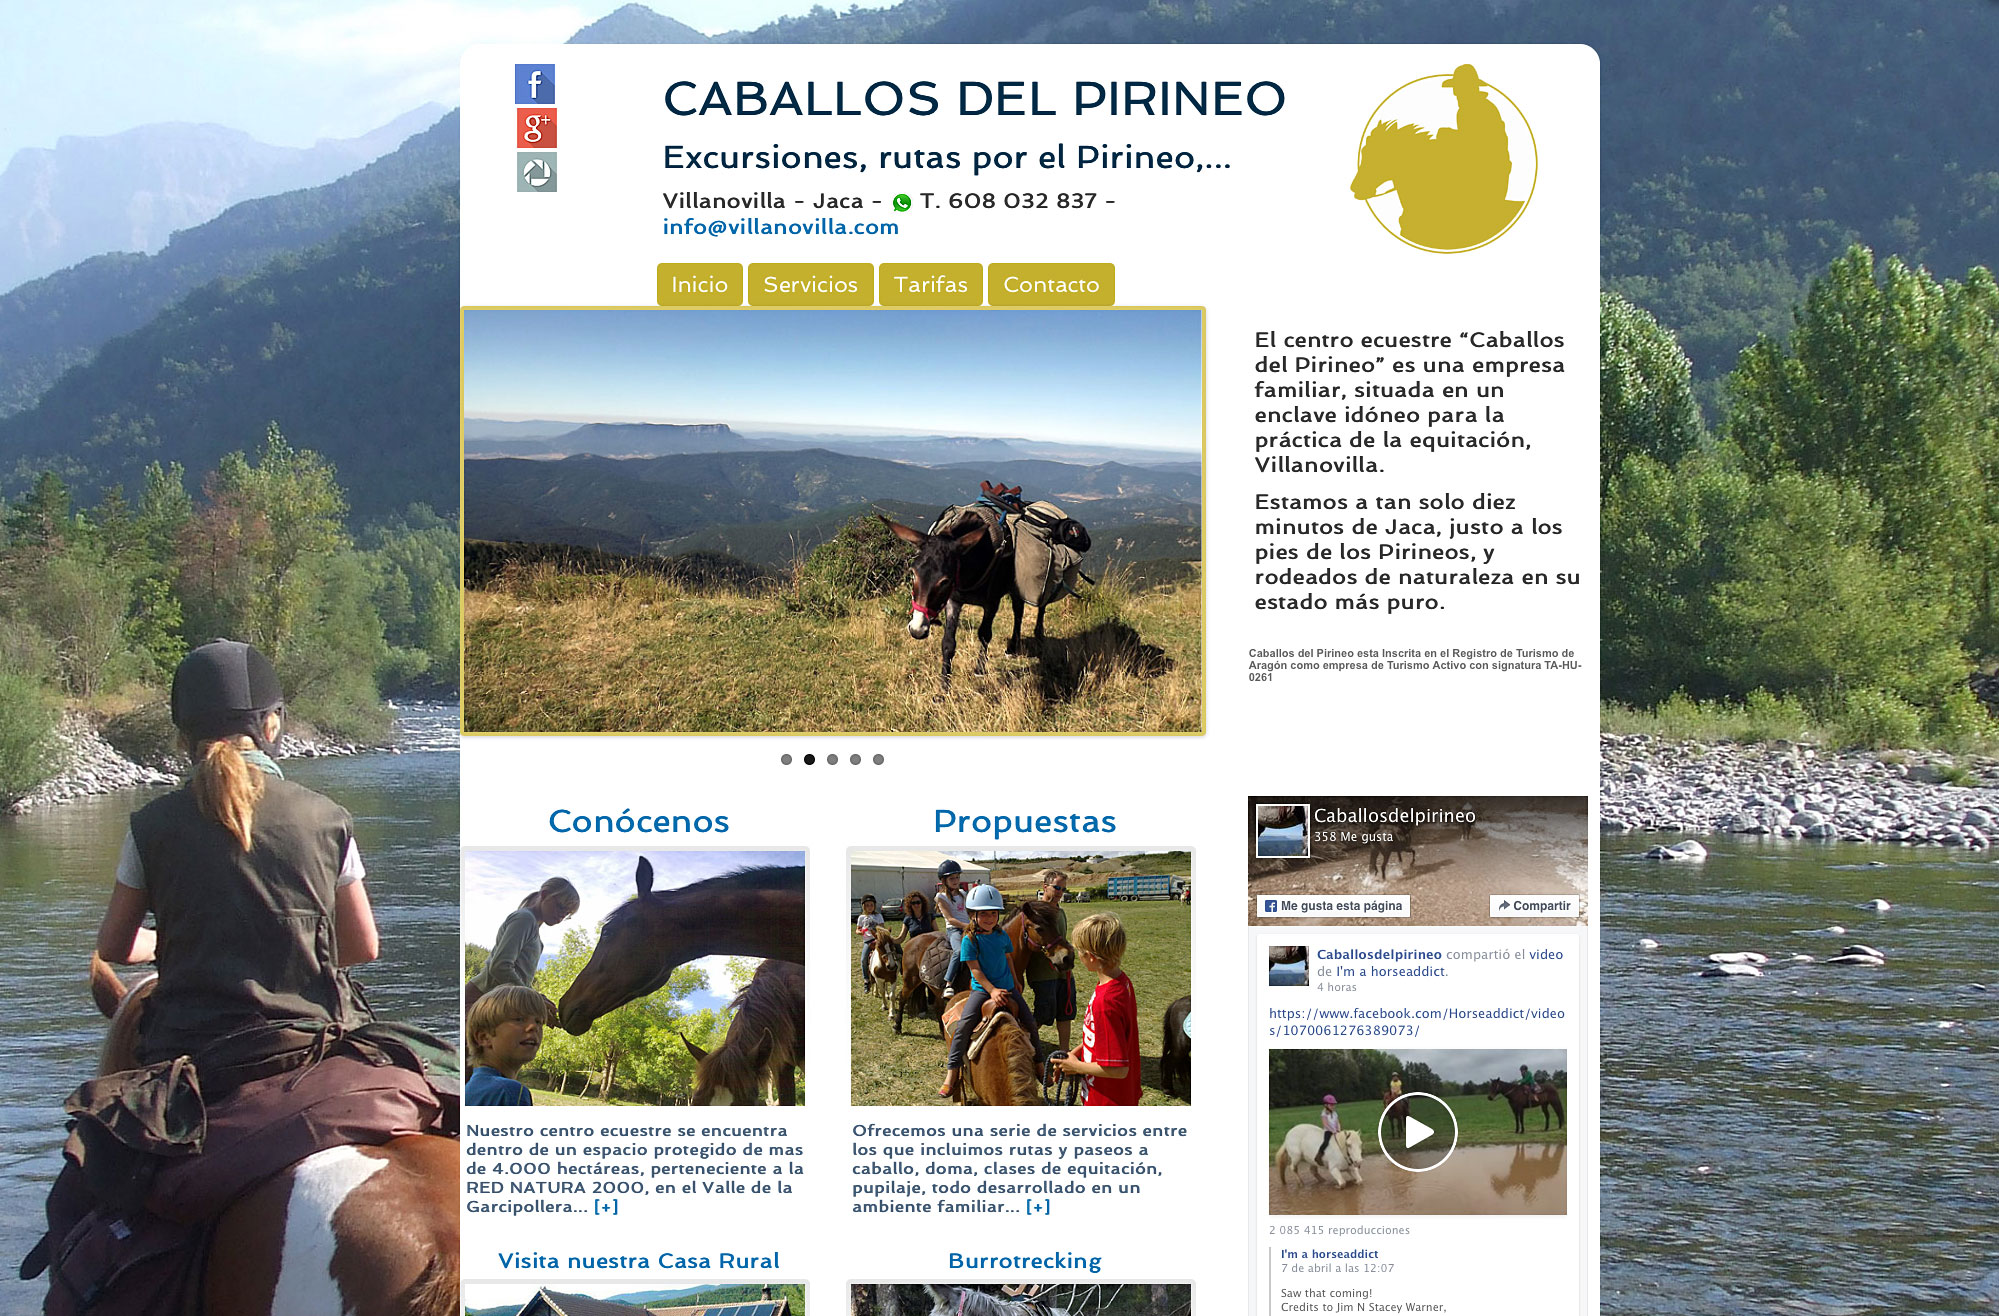 Web del centro ecuestre “Caballos del Pirineo”